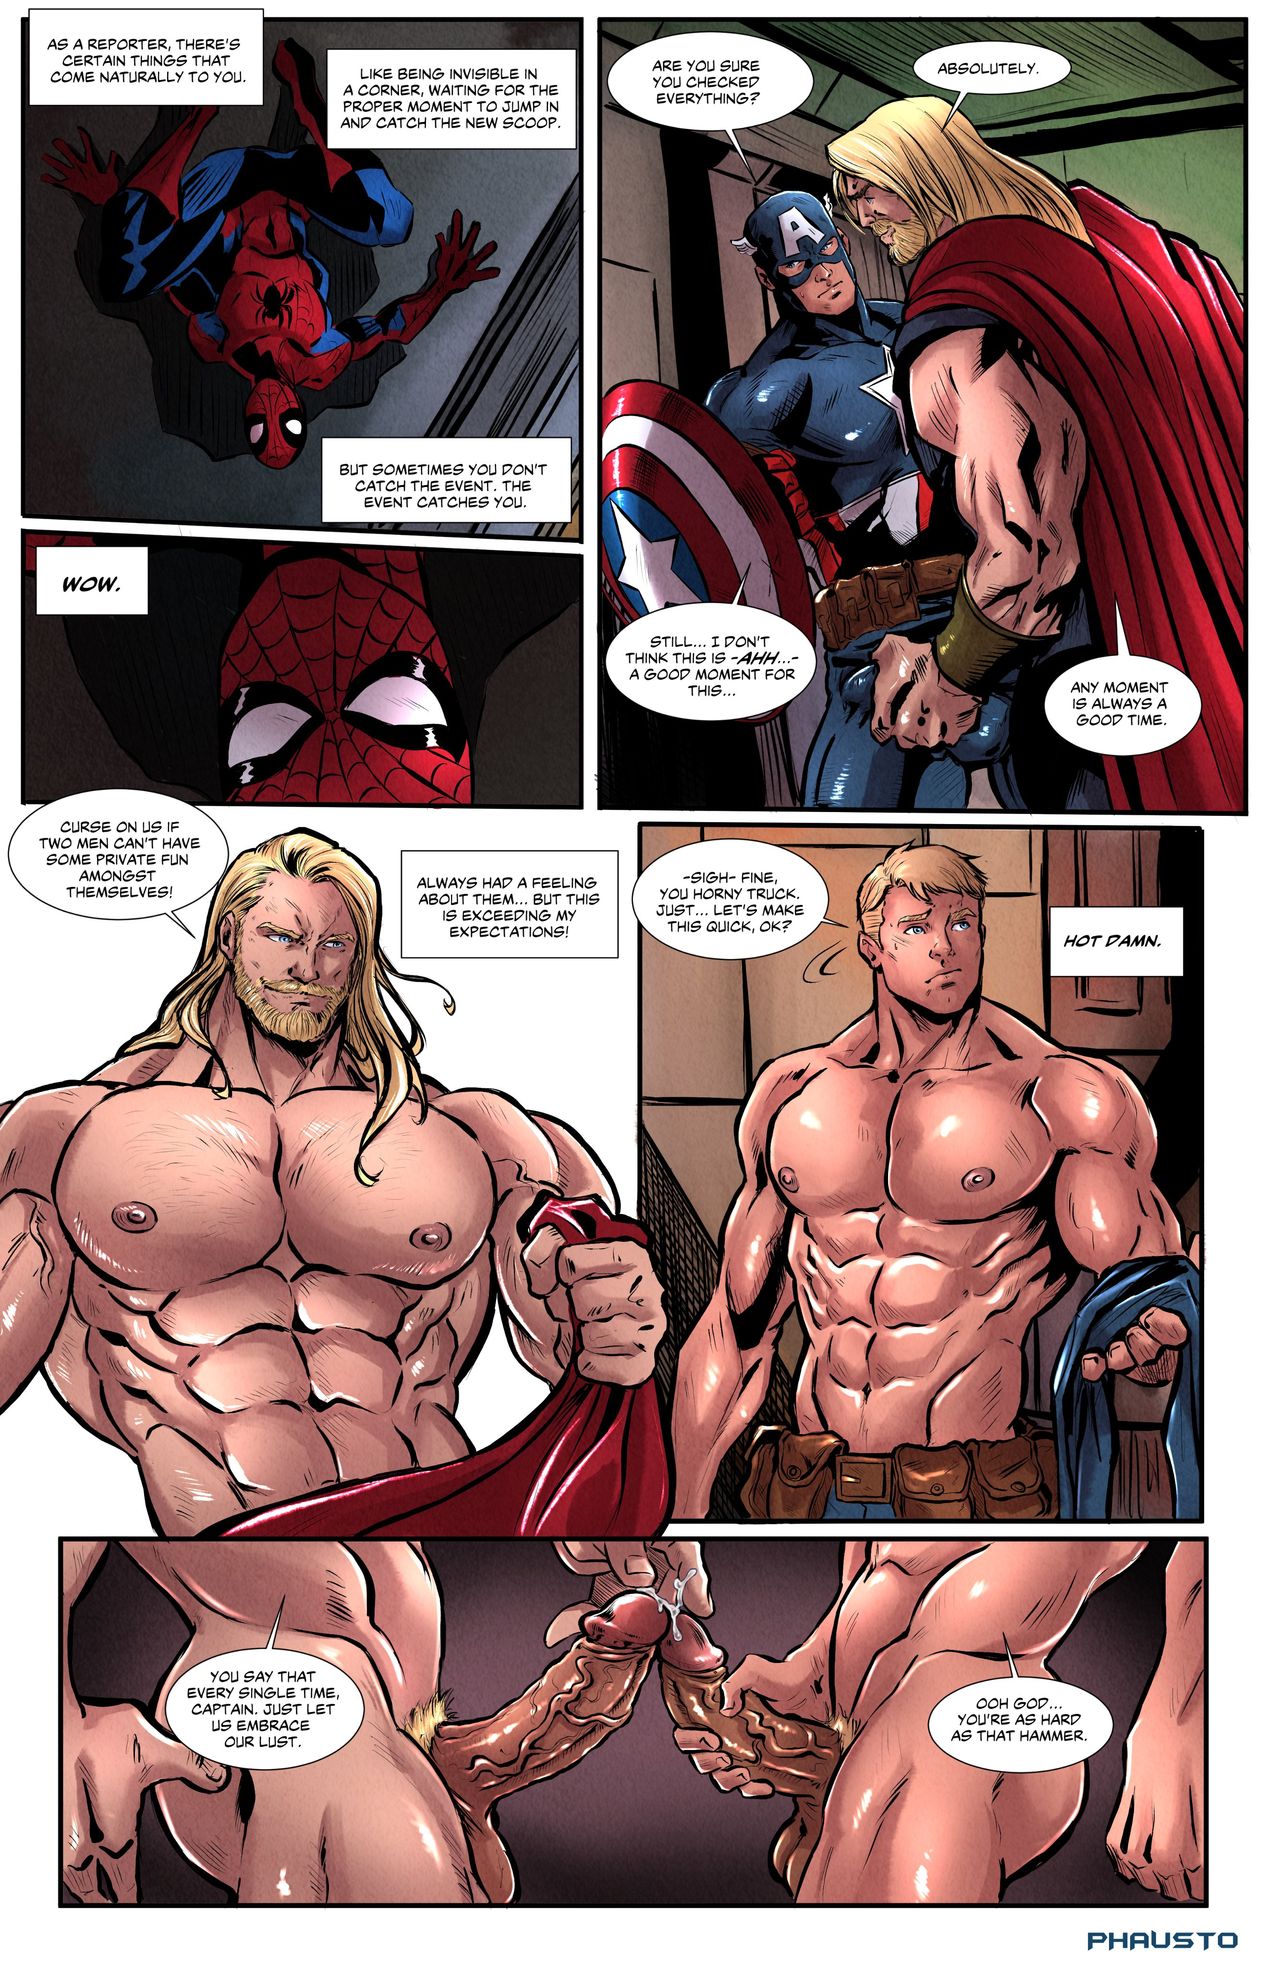 Marvel comics gay porn